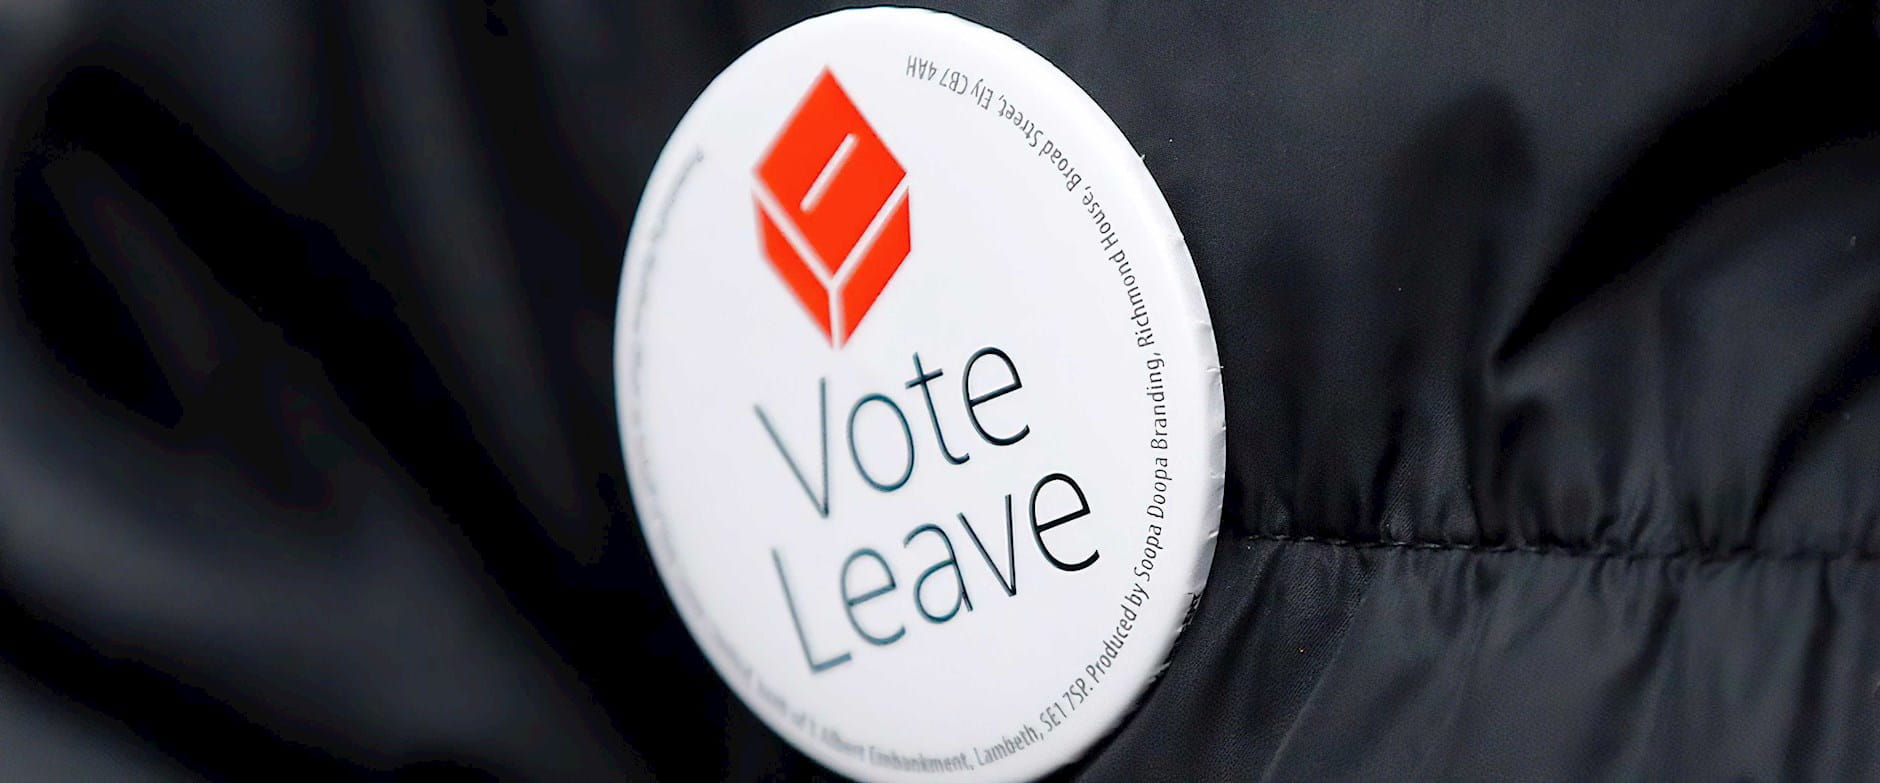 "Vote leave" Brexit button